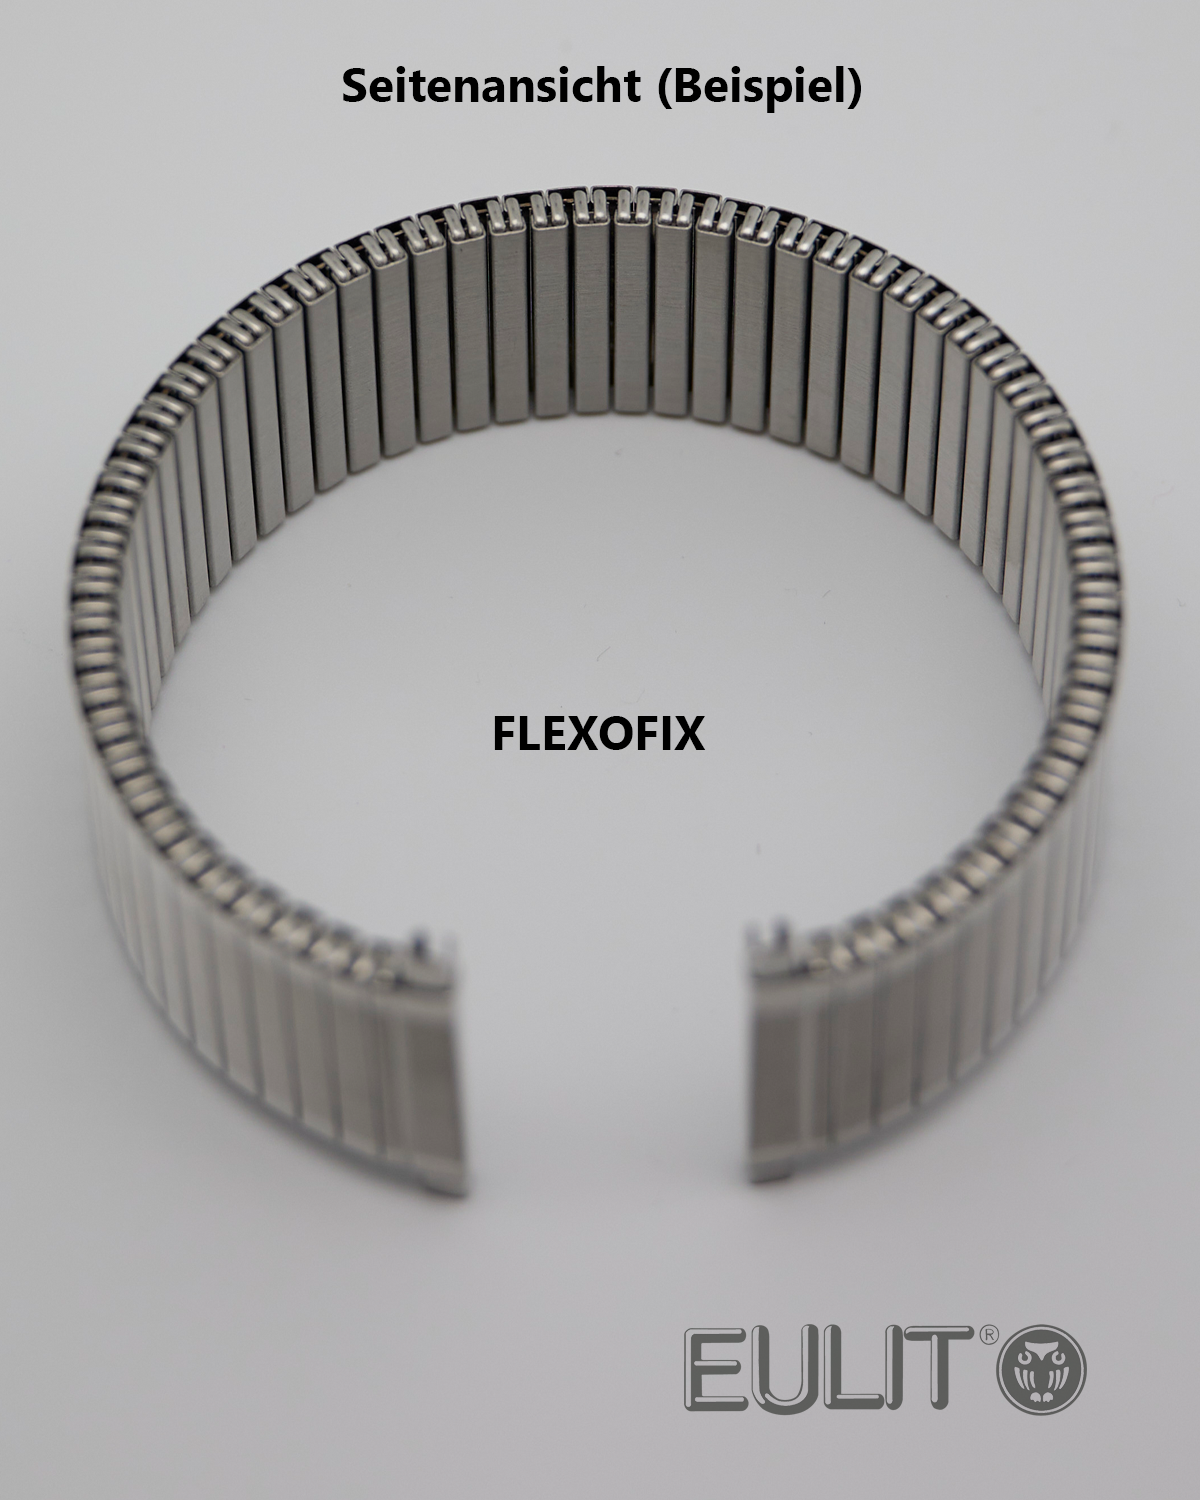 76-420121 EULIT FLEXOFIX 12-14 mm Edelstahl